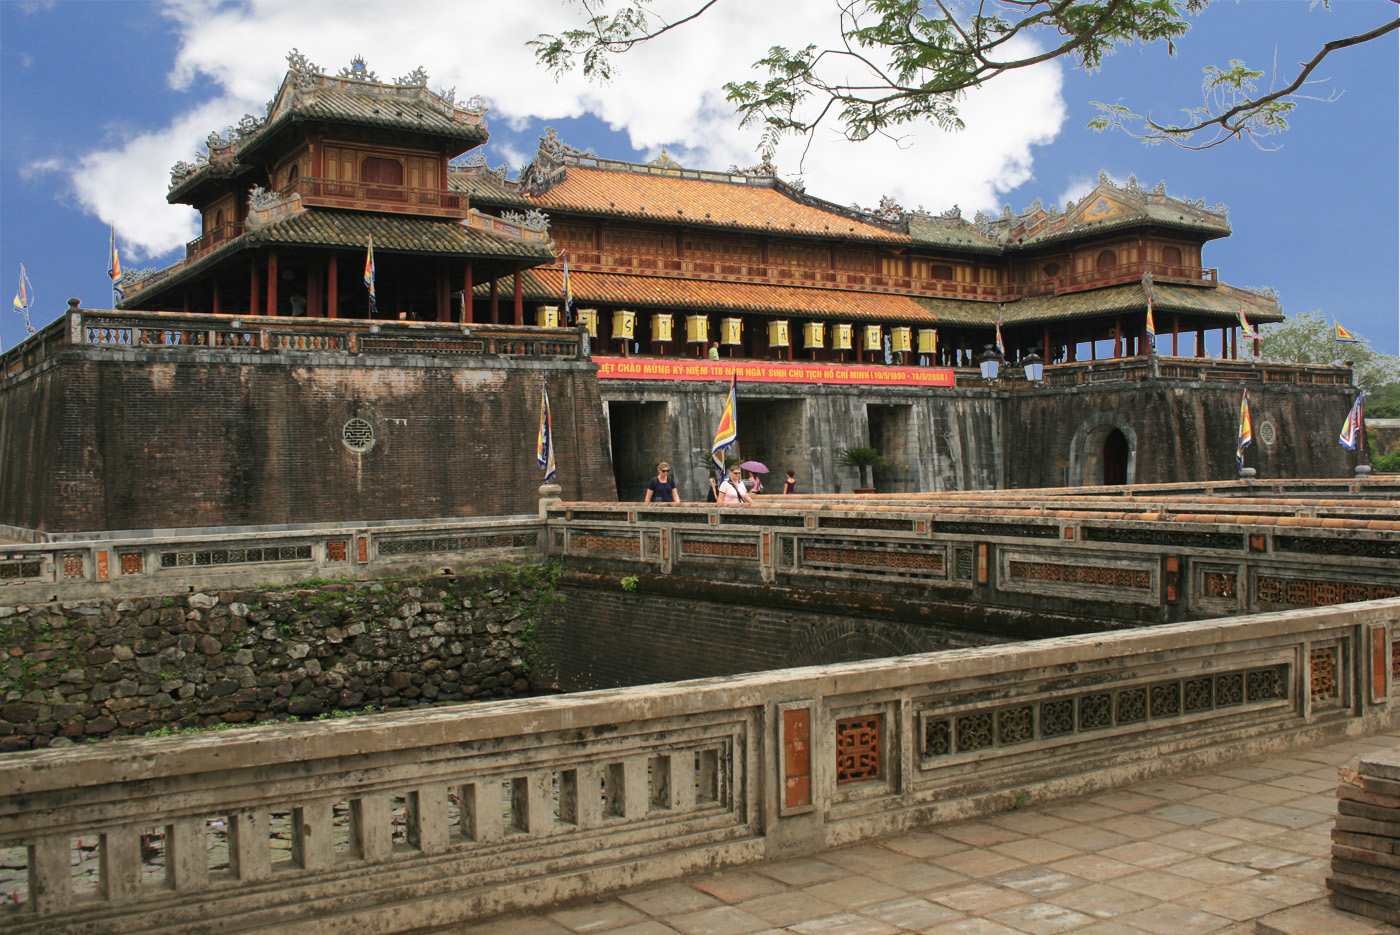 Bí mật phong thủy đằng sau kiến trúc kinh thành Huế thời nhà Nguyễn (Kỳ 2)